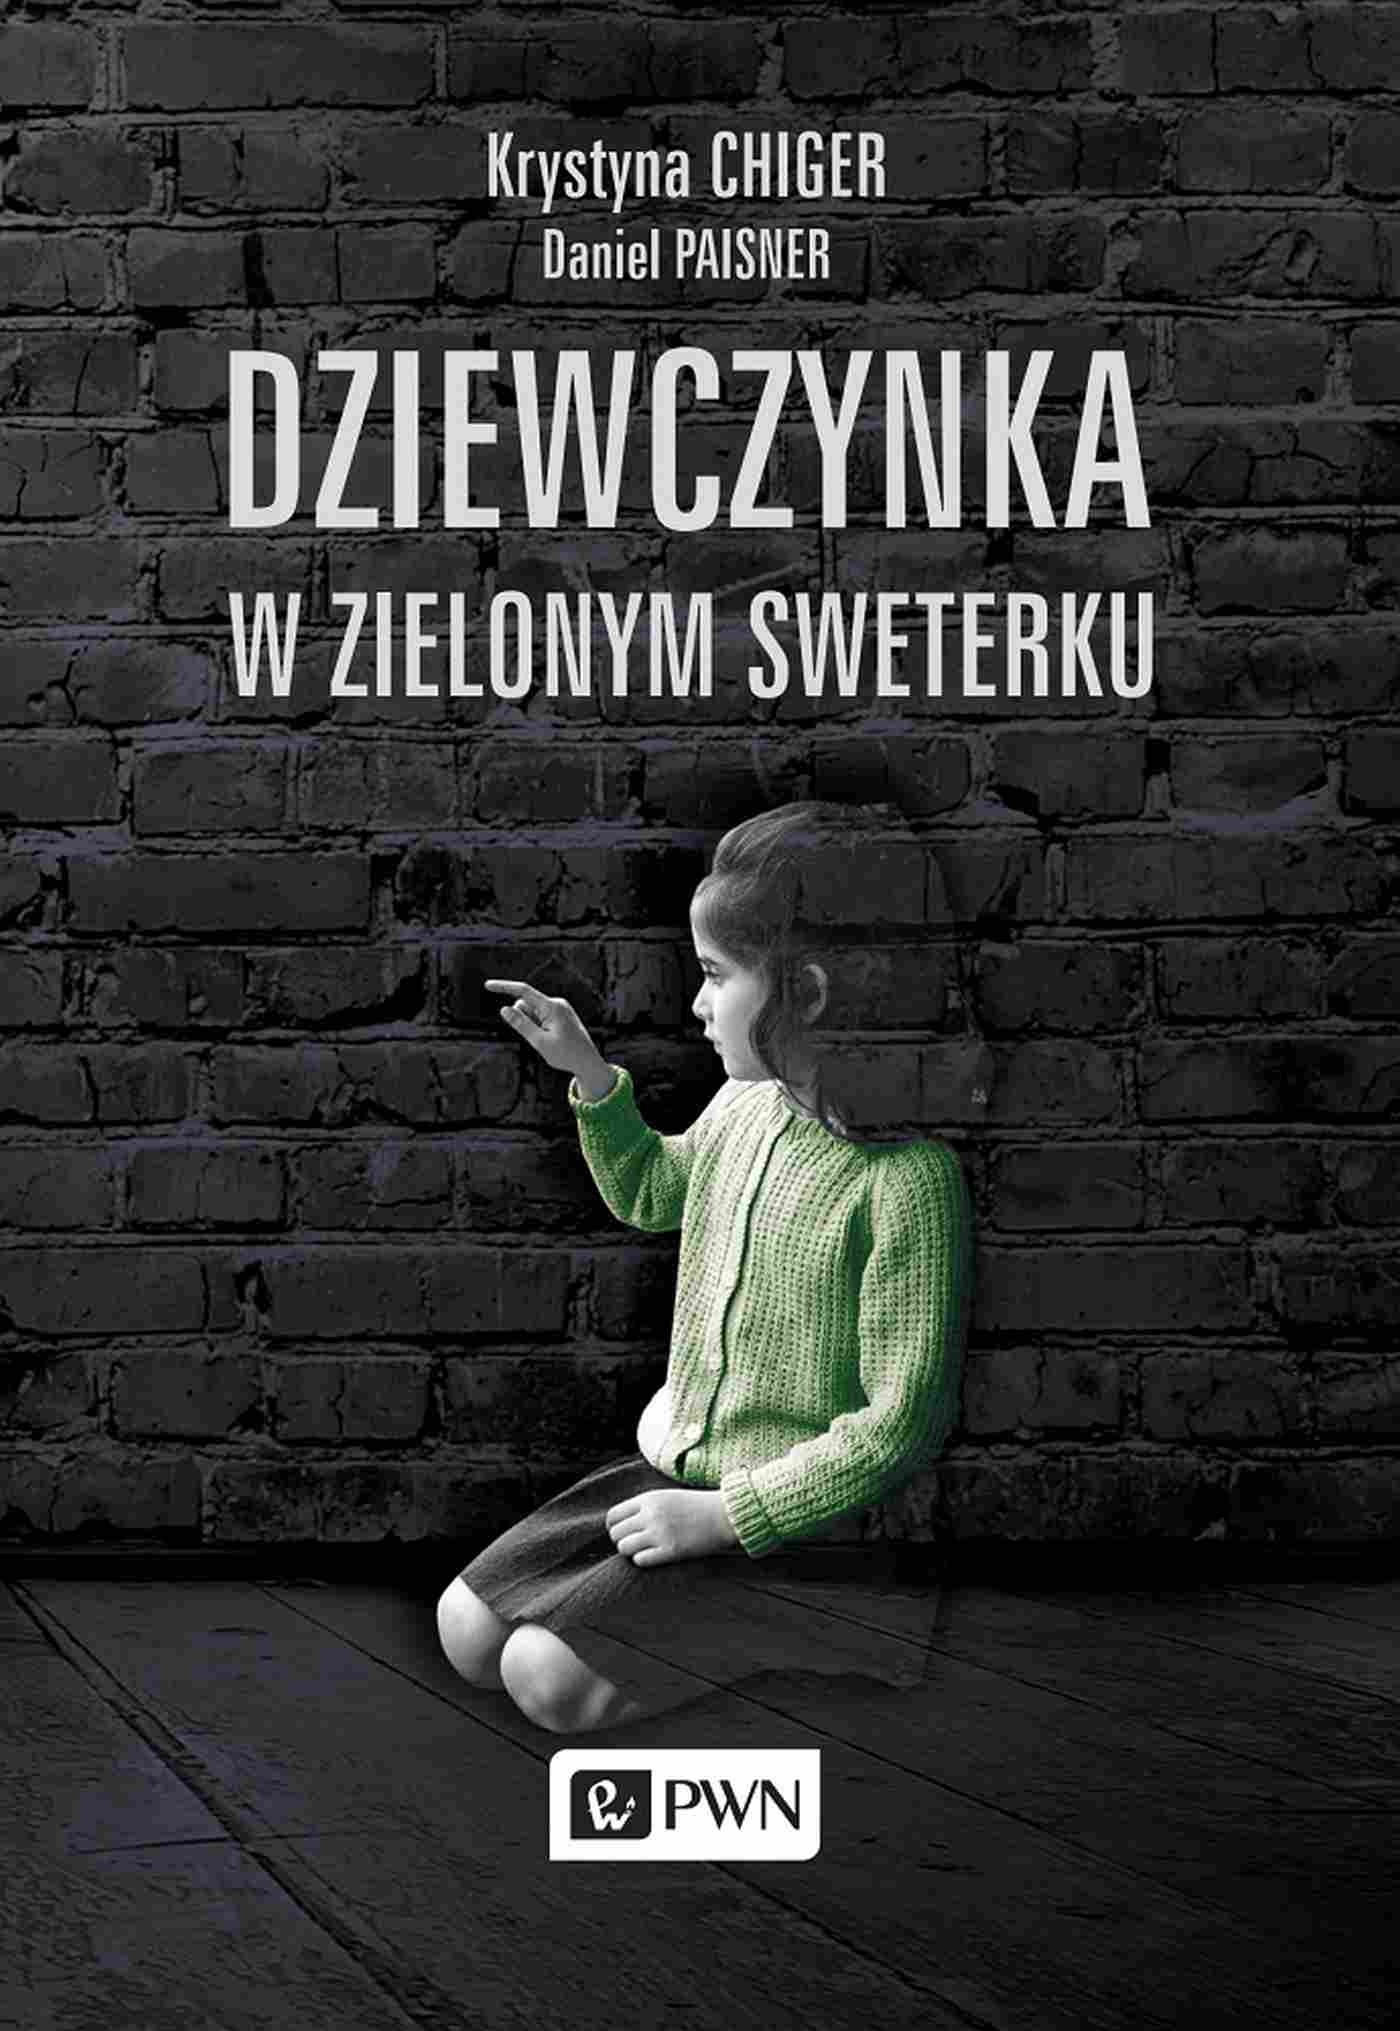 Kniha Dziewczynka w zielonym sweterku wyd. 2021 Krystyna Chiger